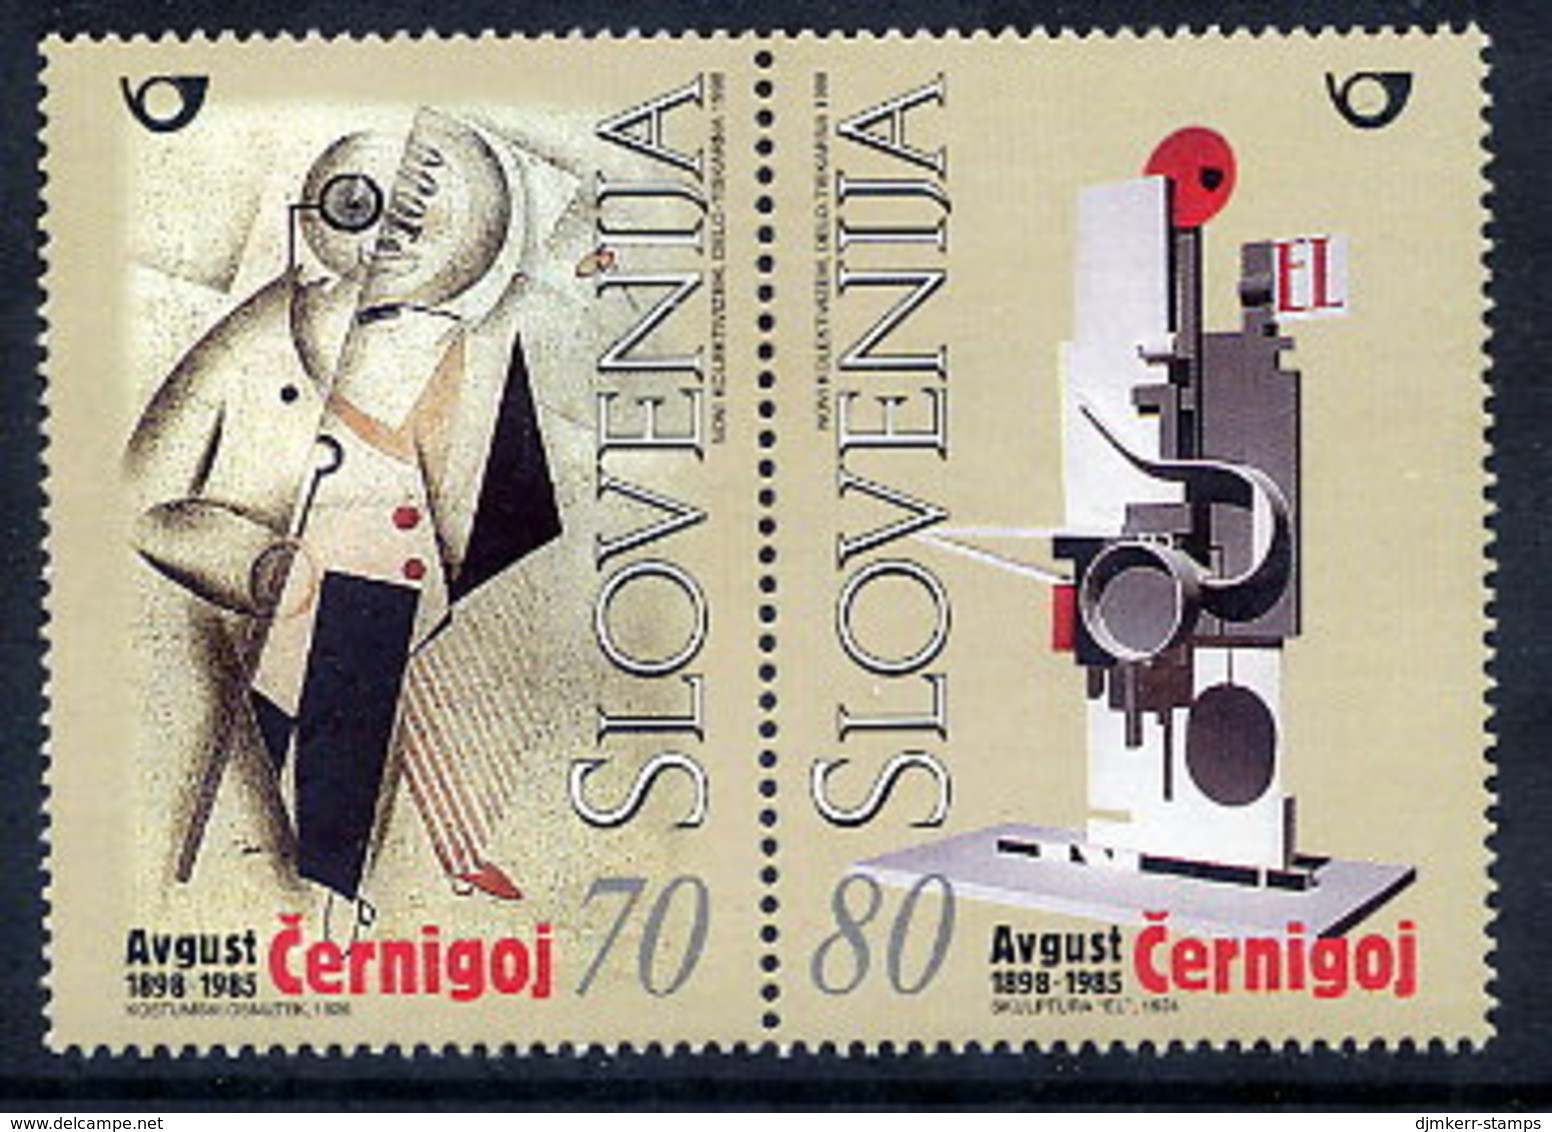 SLOVENIA 1998 August Cernigoj Centenary  MNH / **  Michel 237-38 - Slovénie